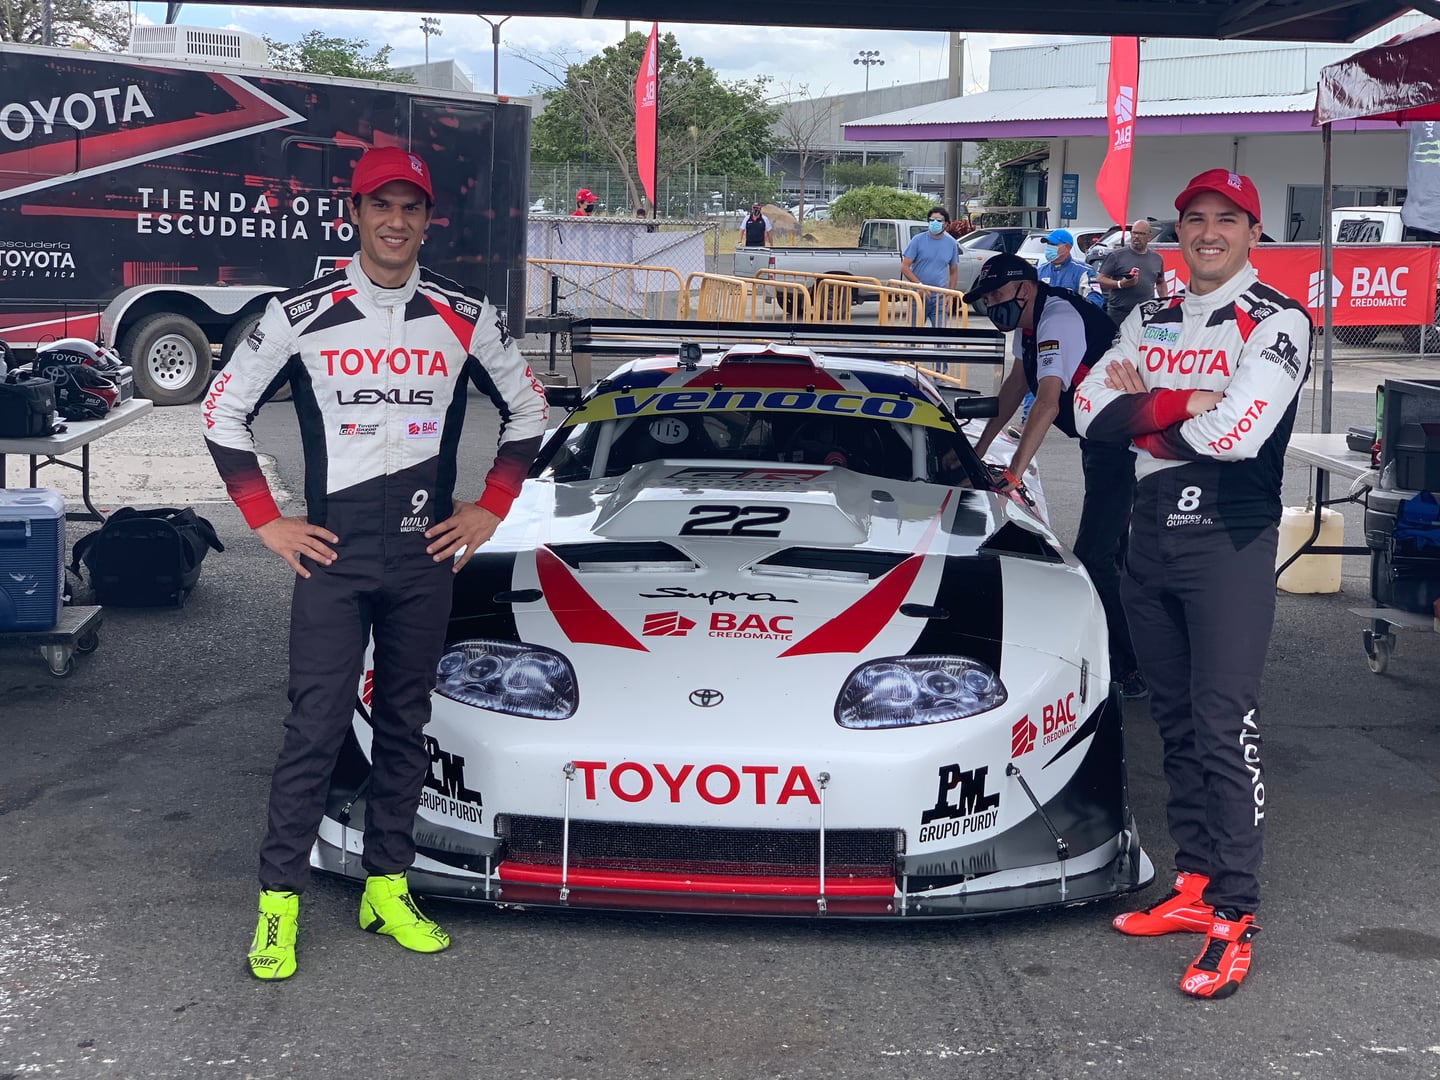 Las Tres Horas de Costa Rica
Los pilotos Emilio ‘Milo’ Valverde y Amadeo Quirós Martén estarán al volante del legadario automóvil Toyota Supra GT1
23 de octubre del 2023
Cortesía